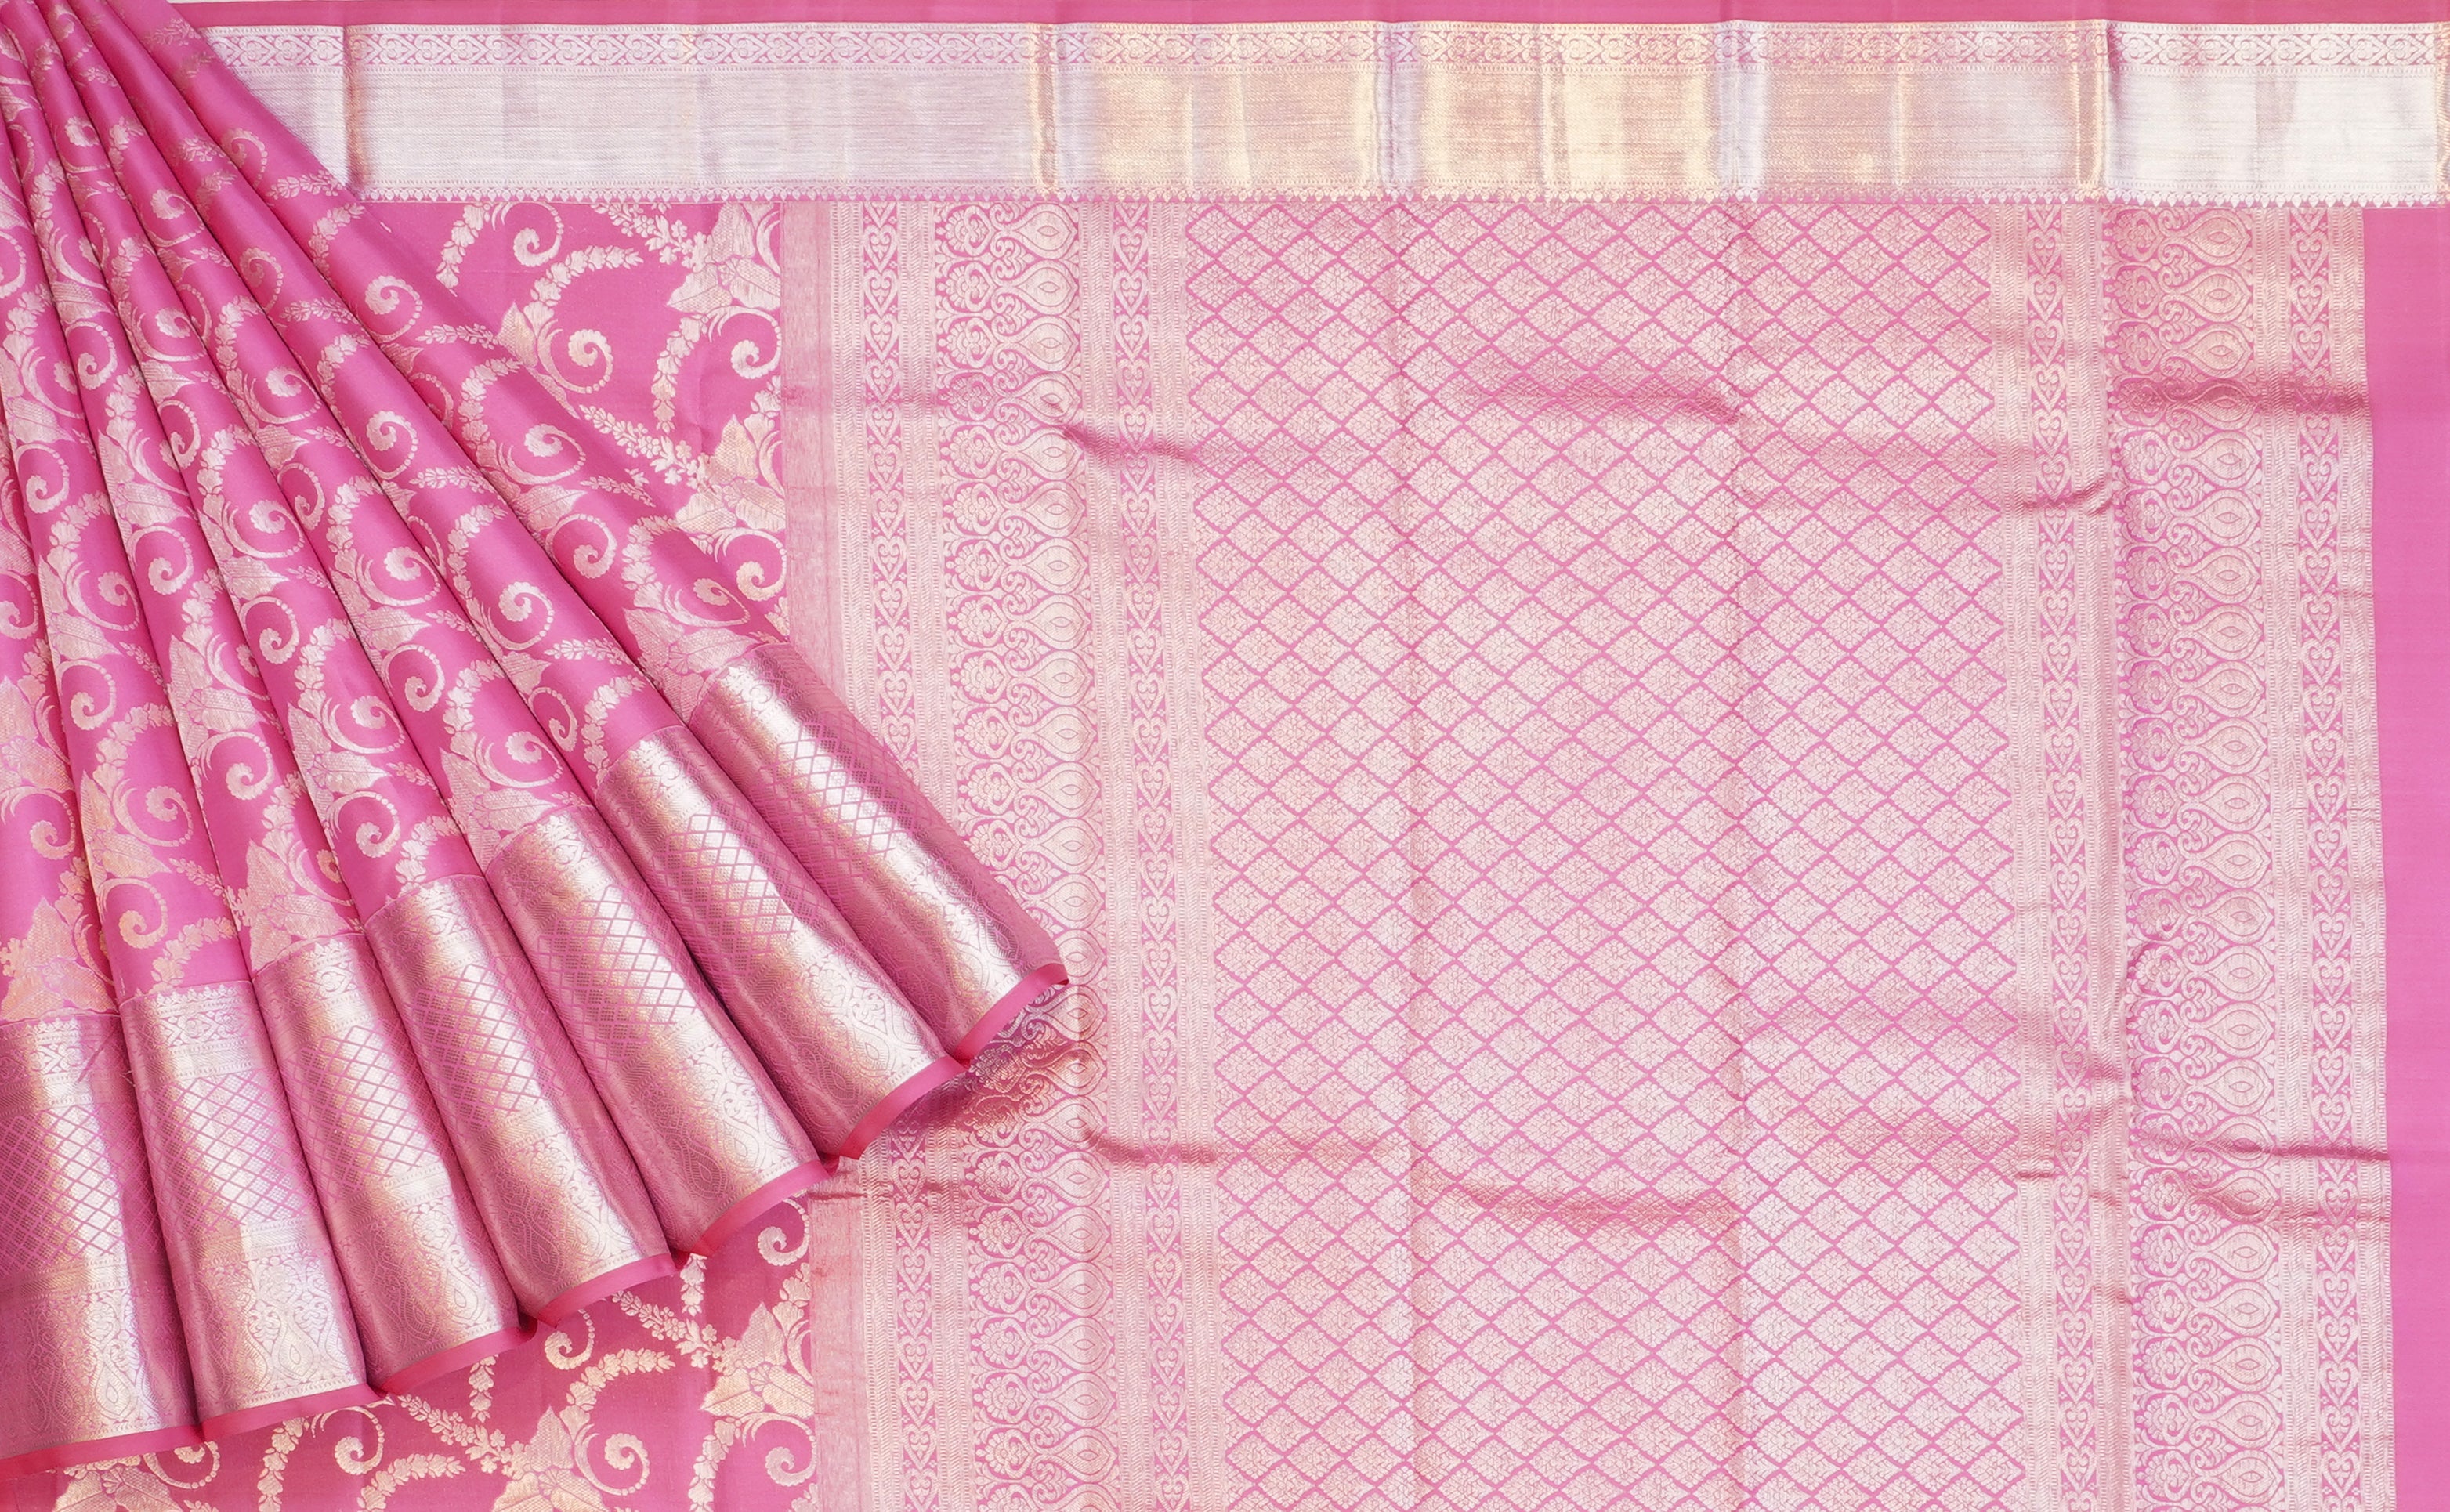 JSB- 9103 | Pink Pure Kanchi Kalakshetra Pattu Saree